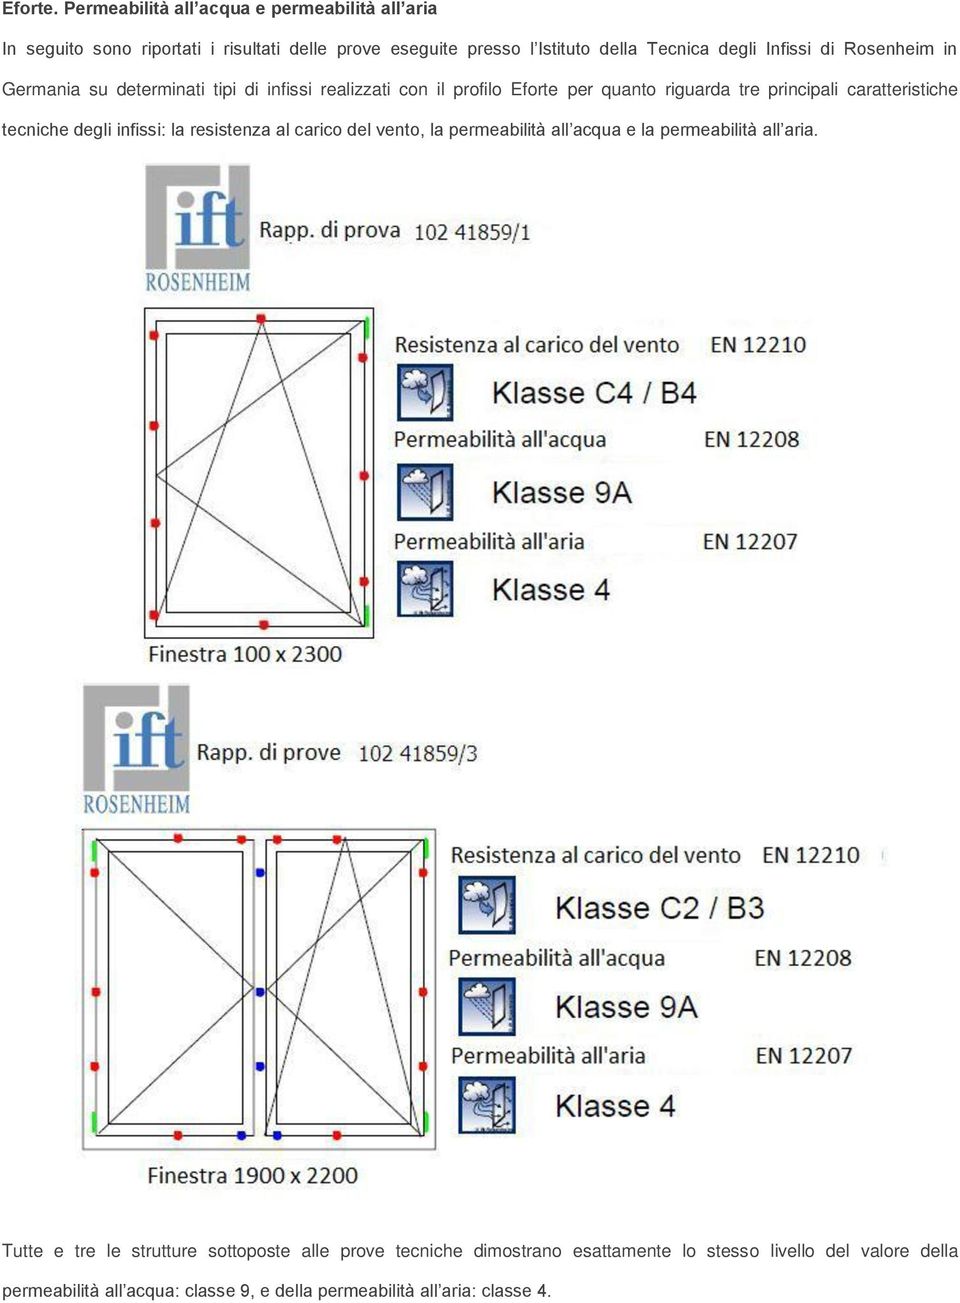 Infissi di Rosenheim in Germania su determinati tipi di infissi realizzati con il profilo Eforte per quanto riguarda tre principali caratteristiche